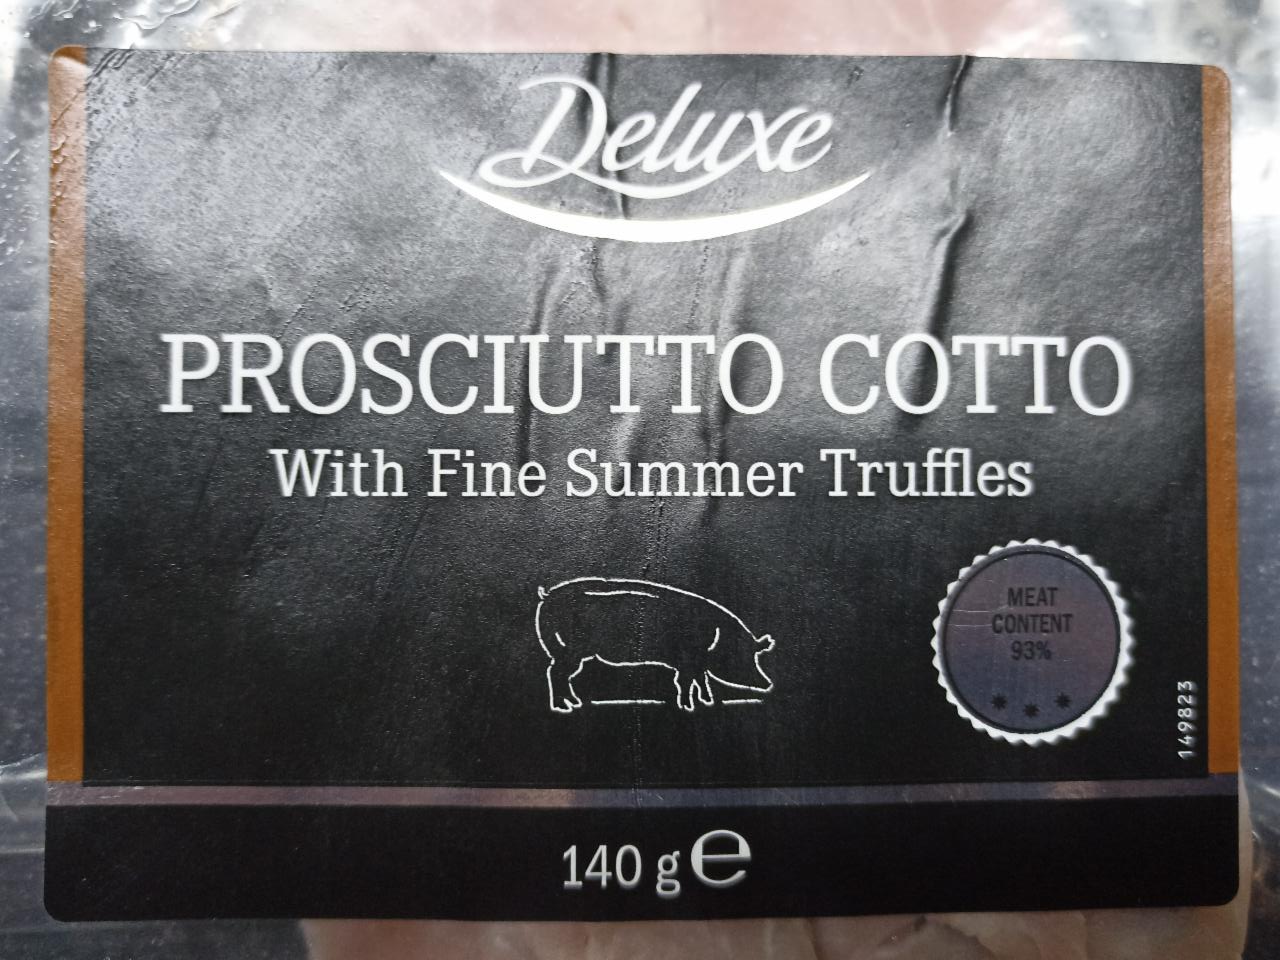 Fotografie - Prosciutto Cotto with fine summer truffles Deluxe